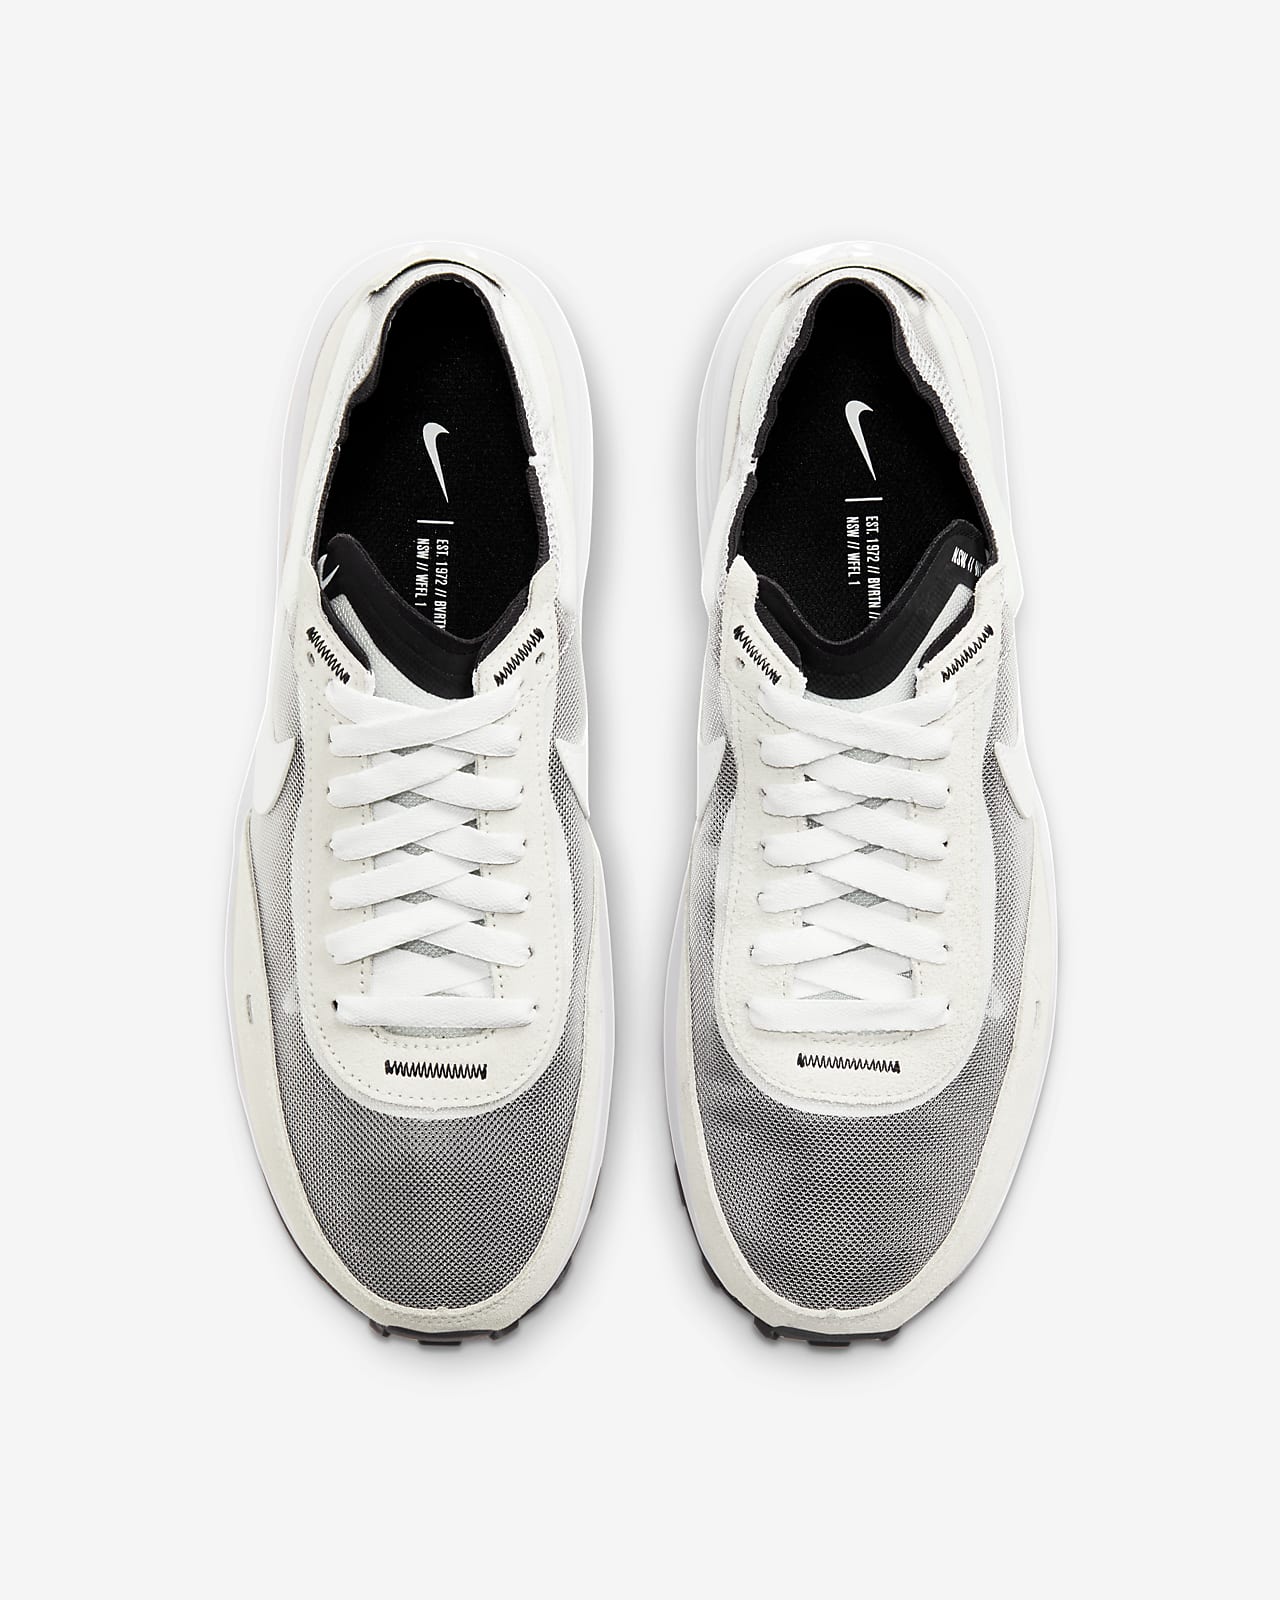 Mens White Shoes. Nike.com